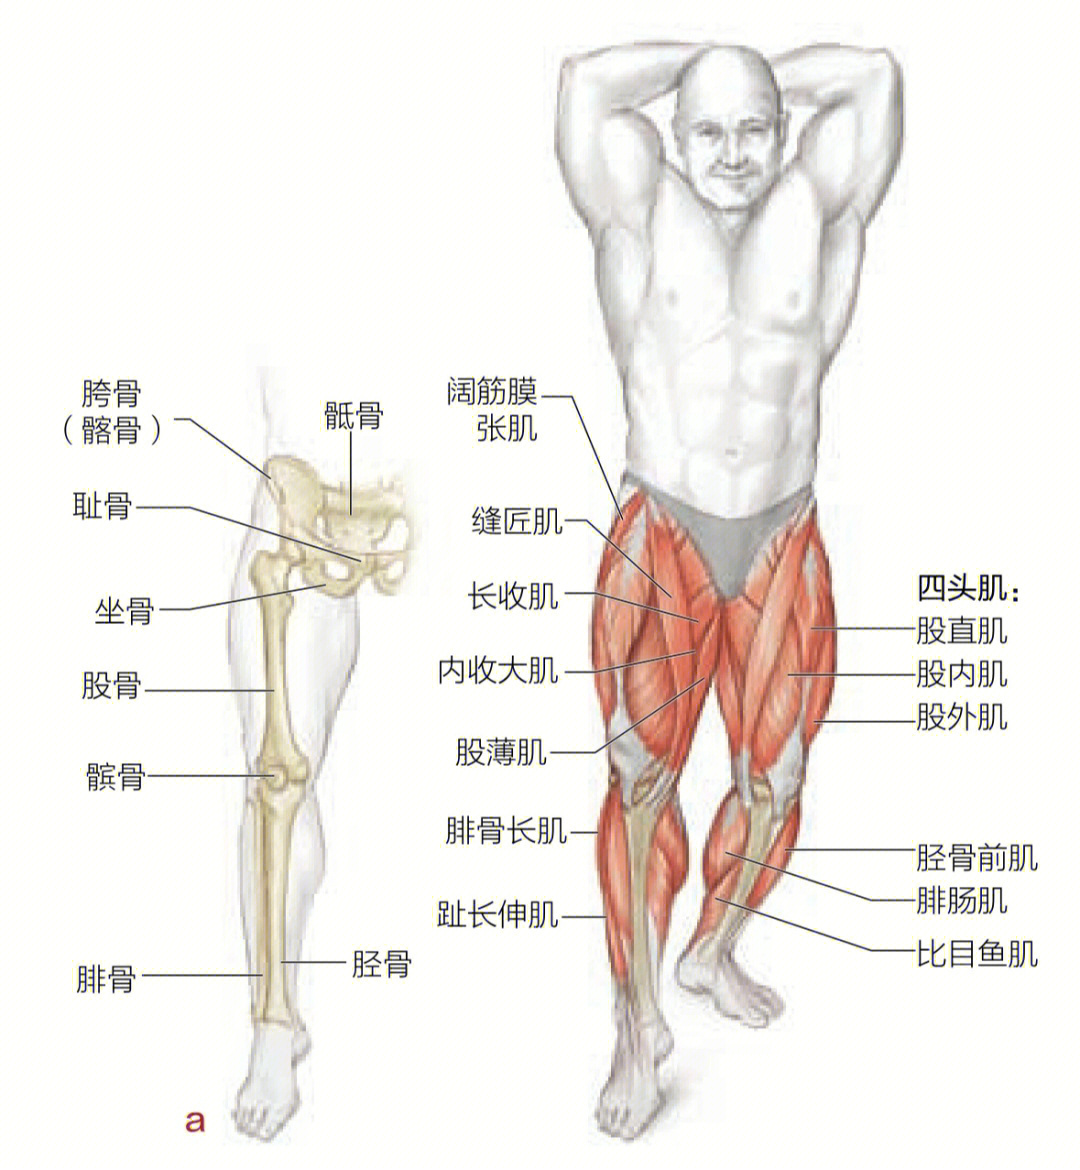 其实,膝超伸除了一些先天性的原因,天生的膝关节松弛,肌肉不平衡,以及